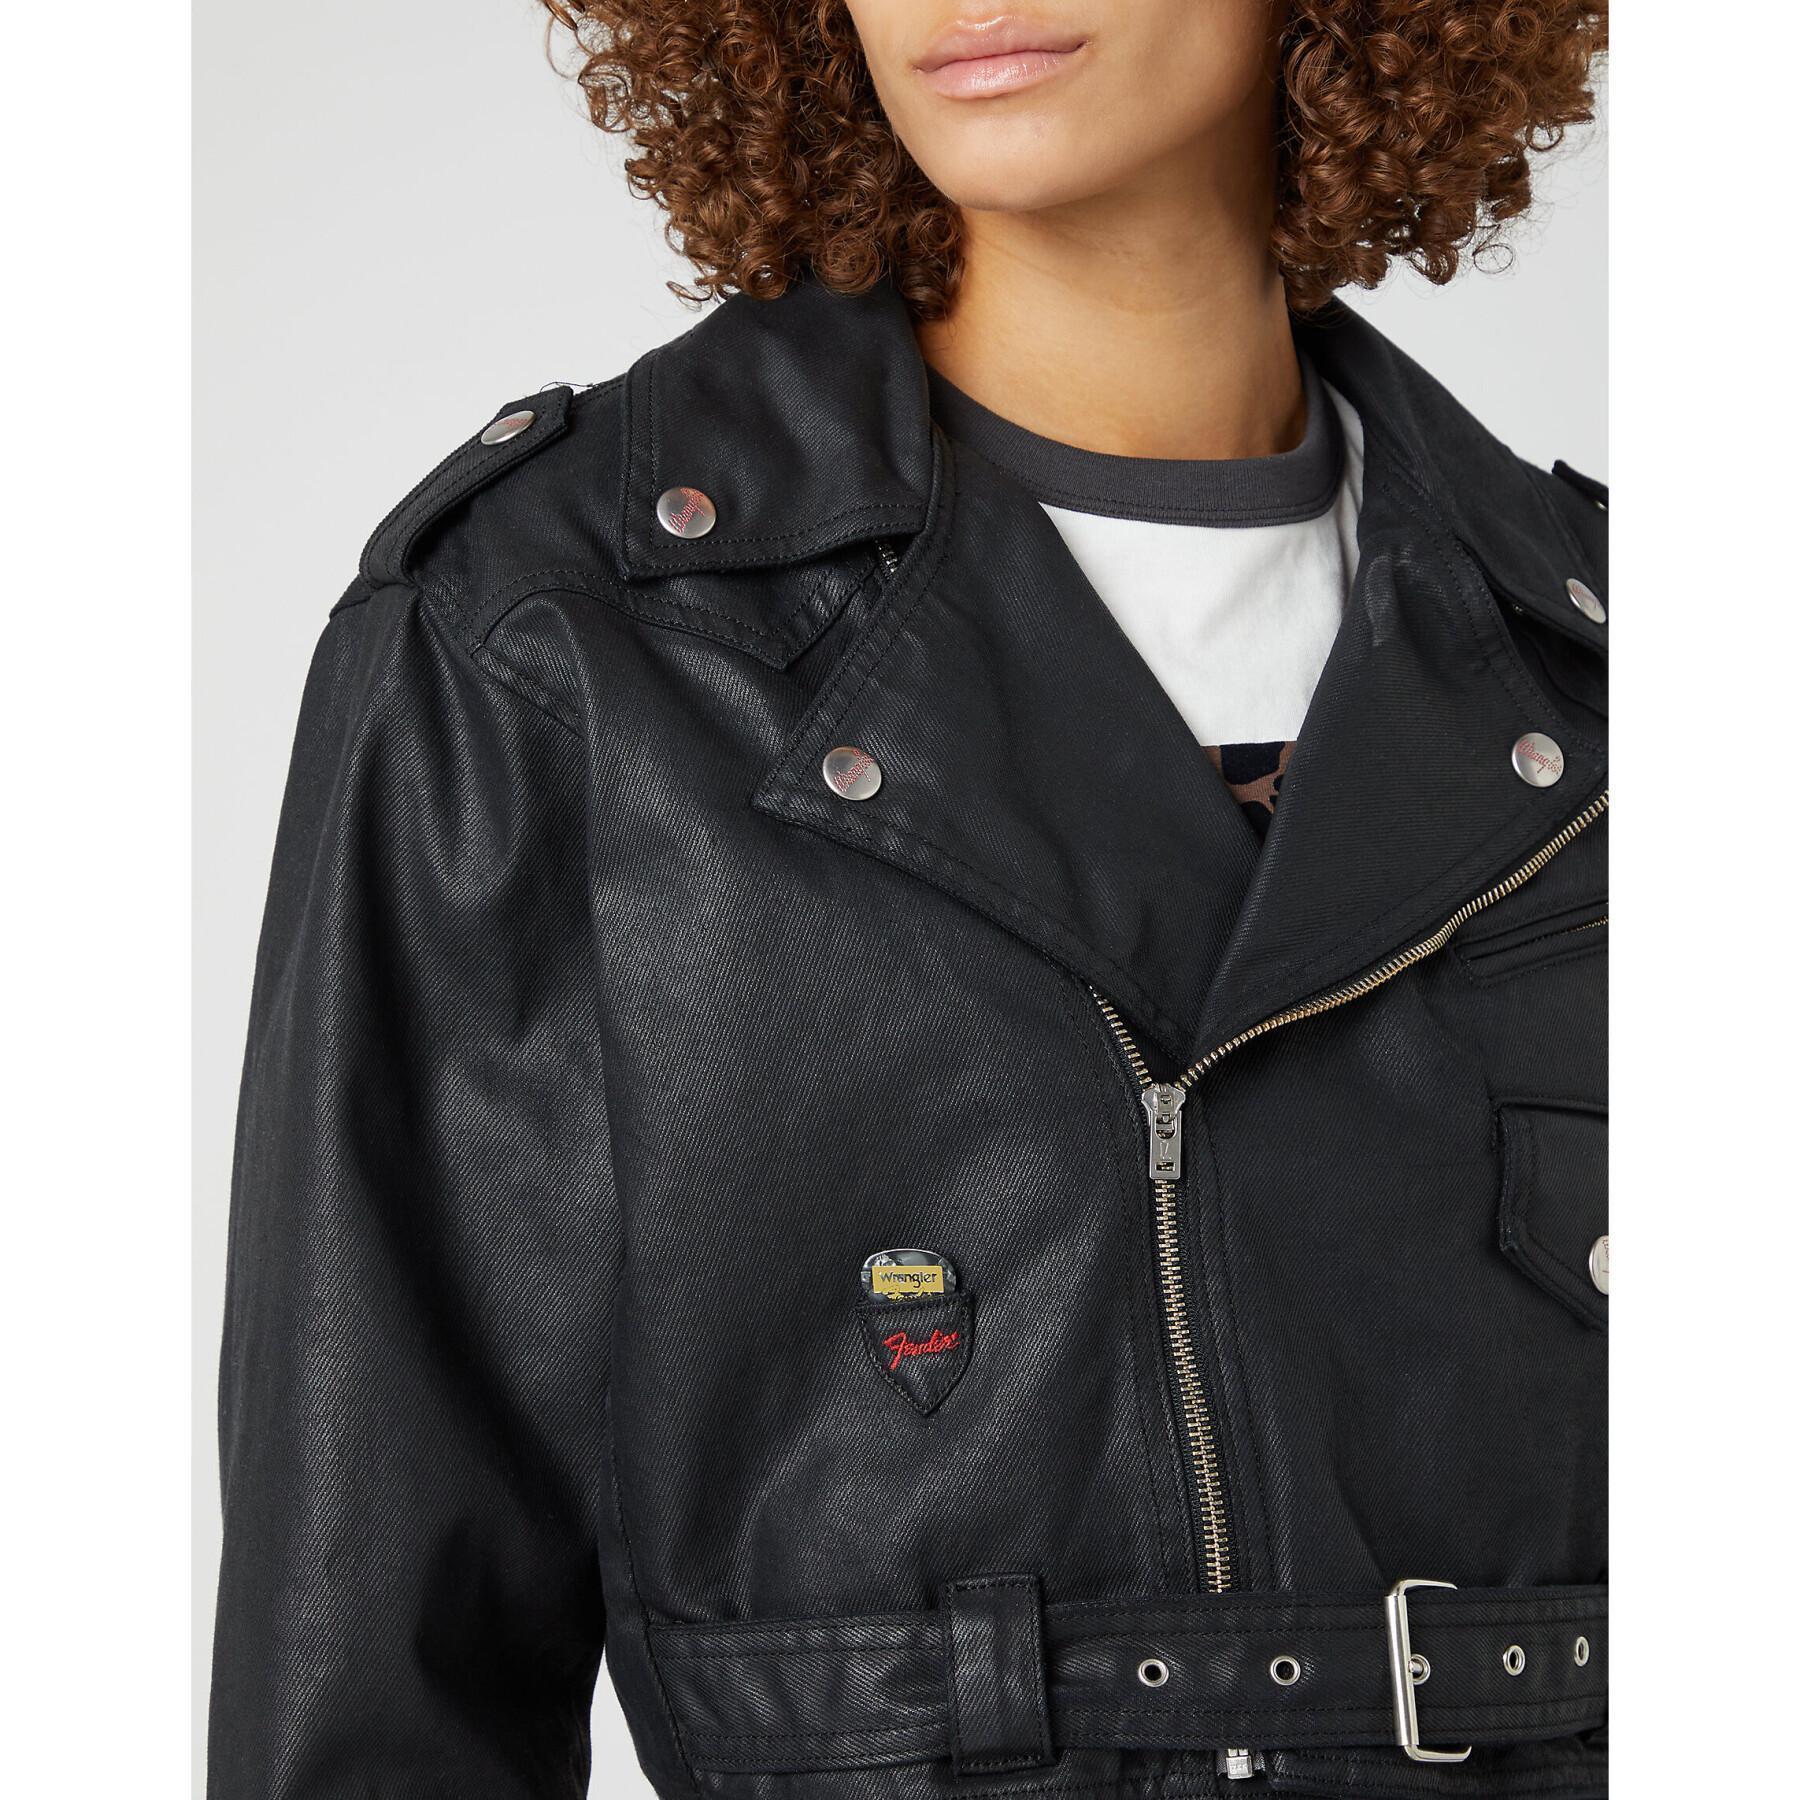 Leather motorcycle jacket woman Wrangler